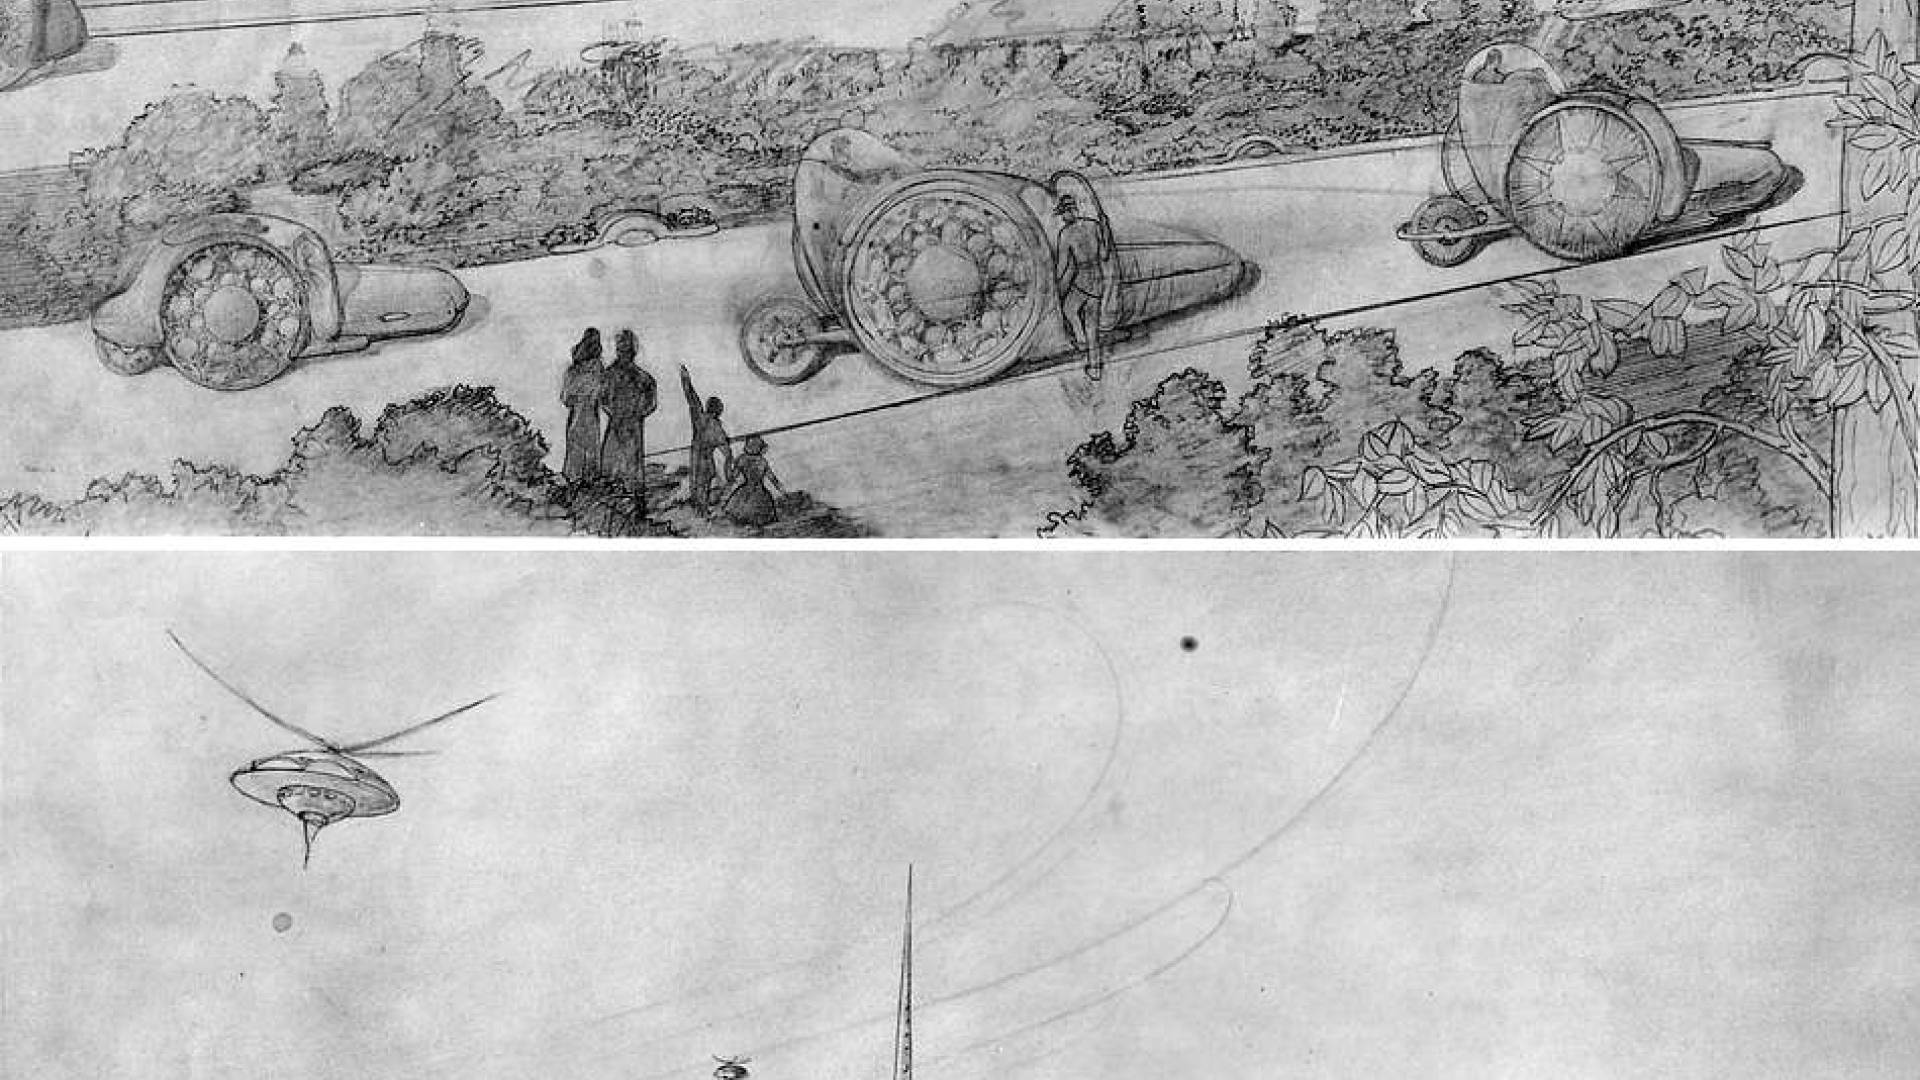 Frank Lloyd Wright Sketch for Broadacre City